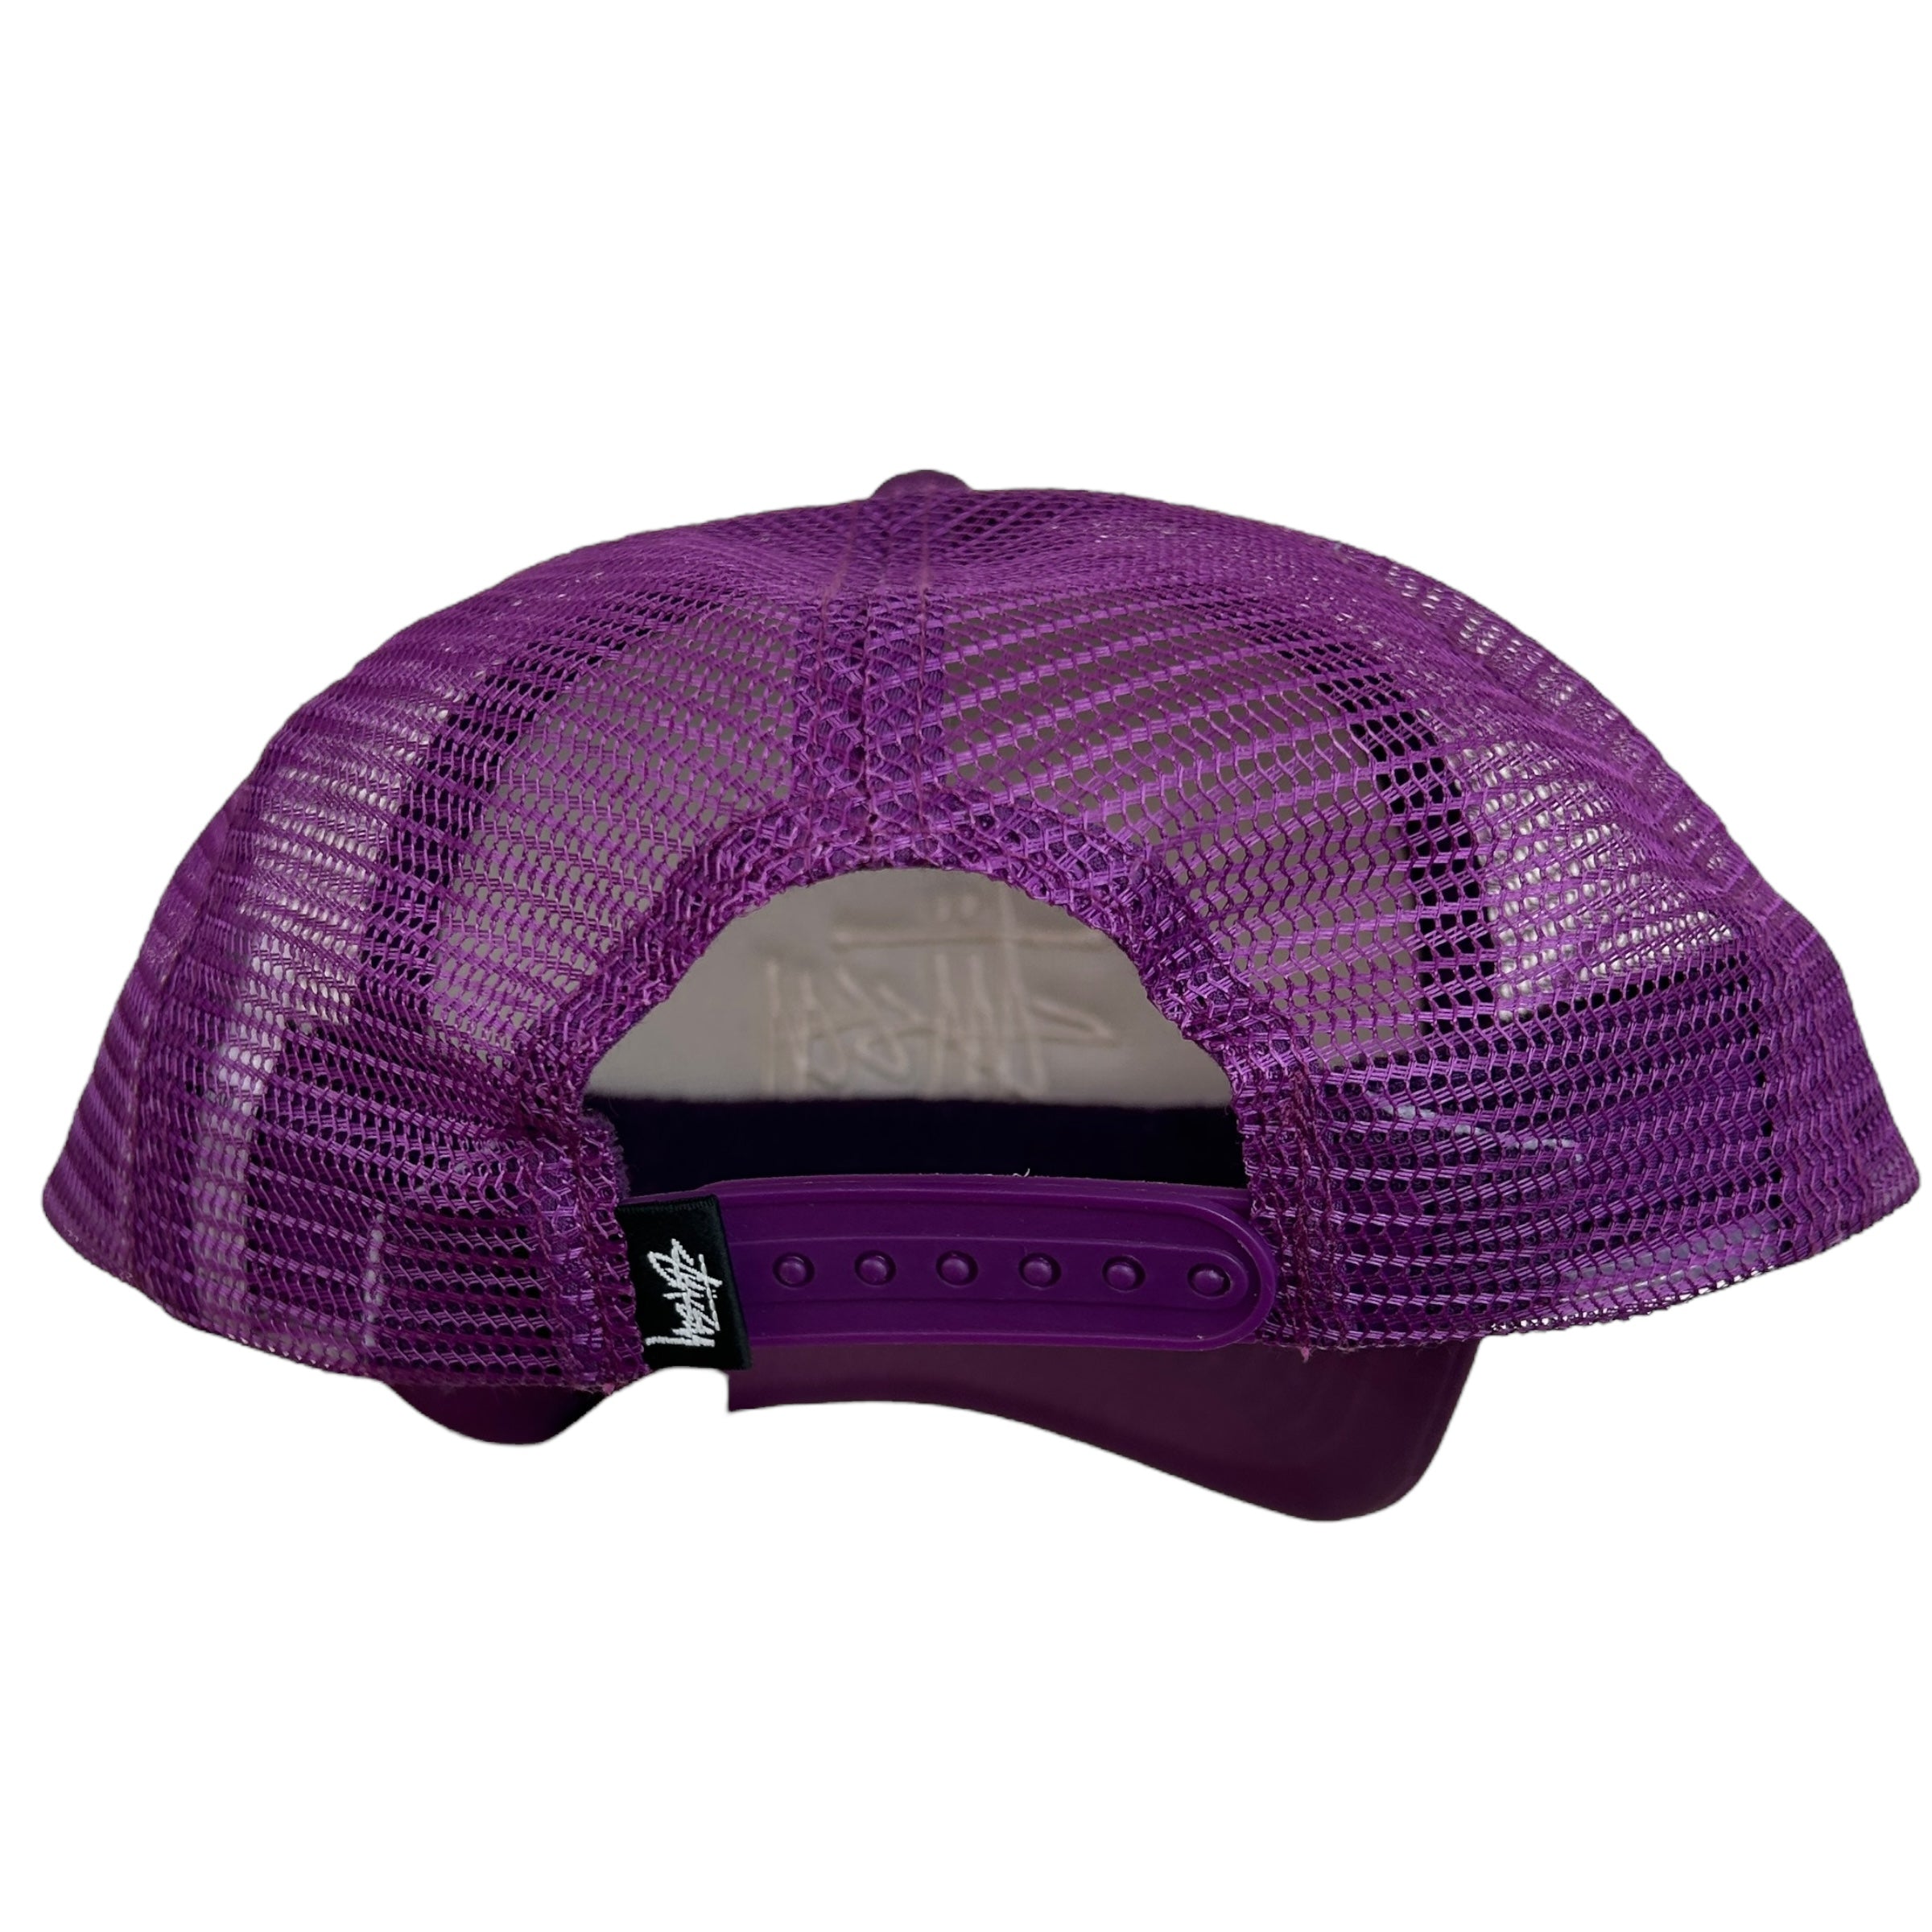 Stussy Stock Logo Purple Trucker Hat